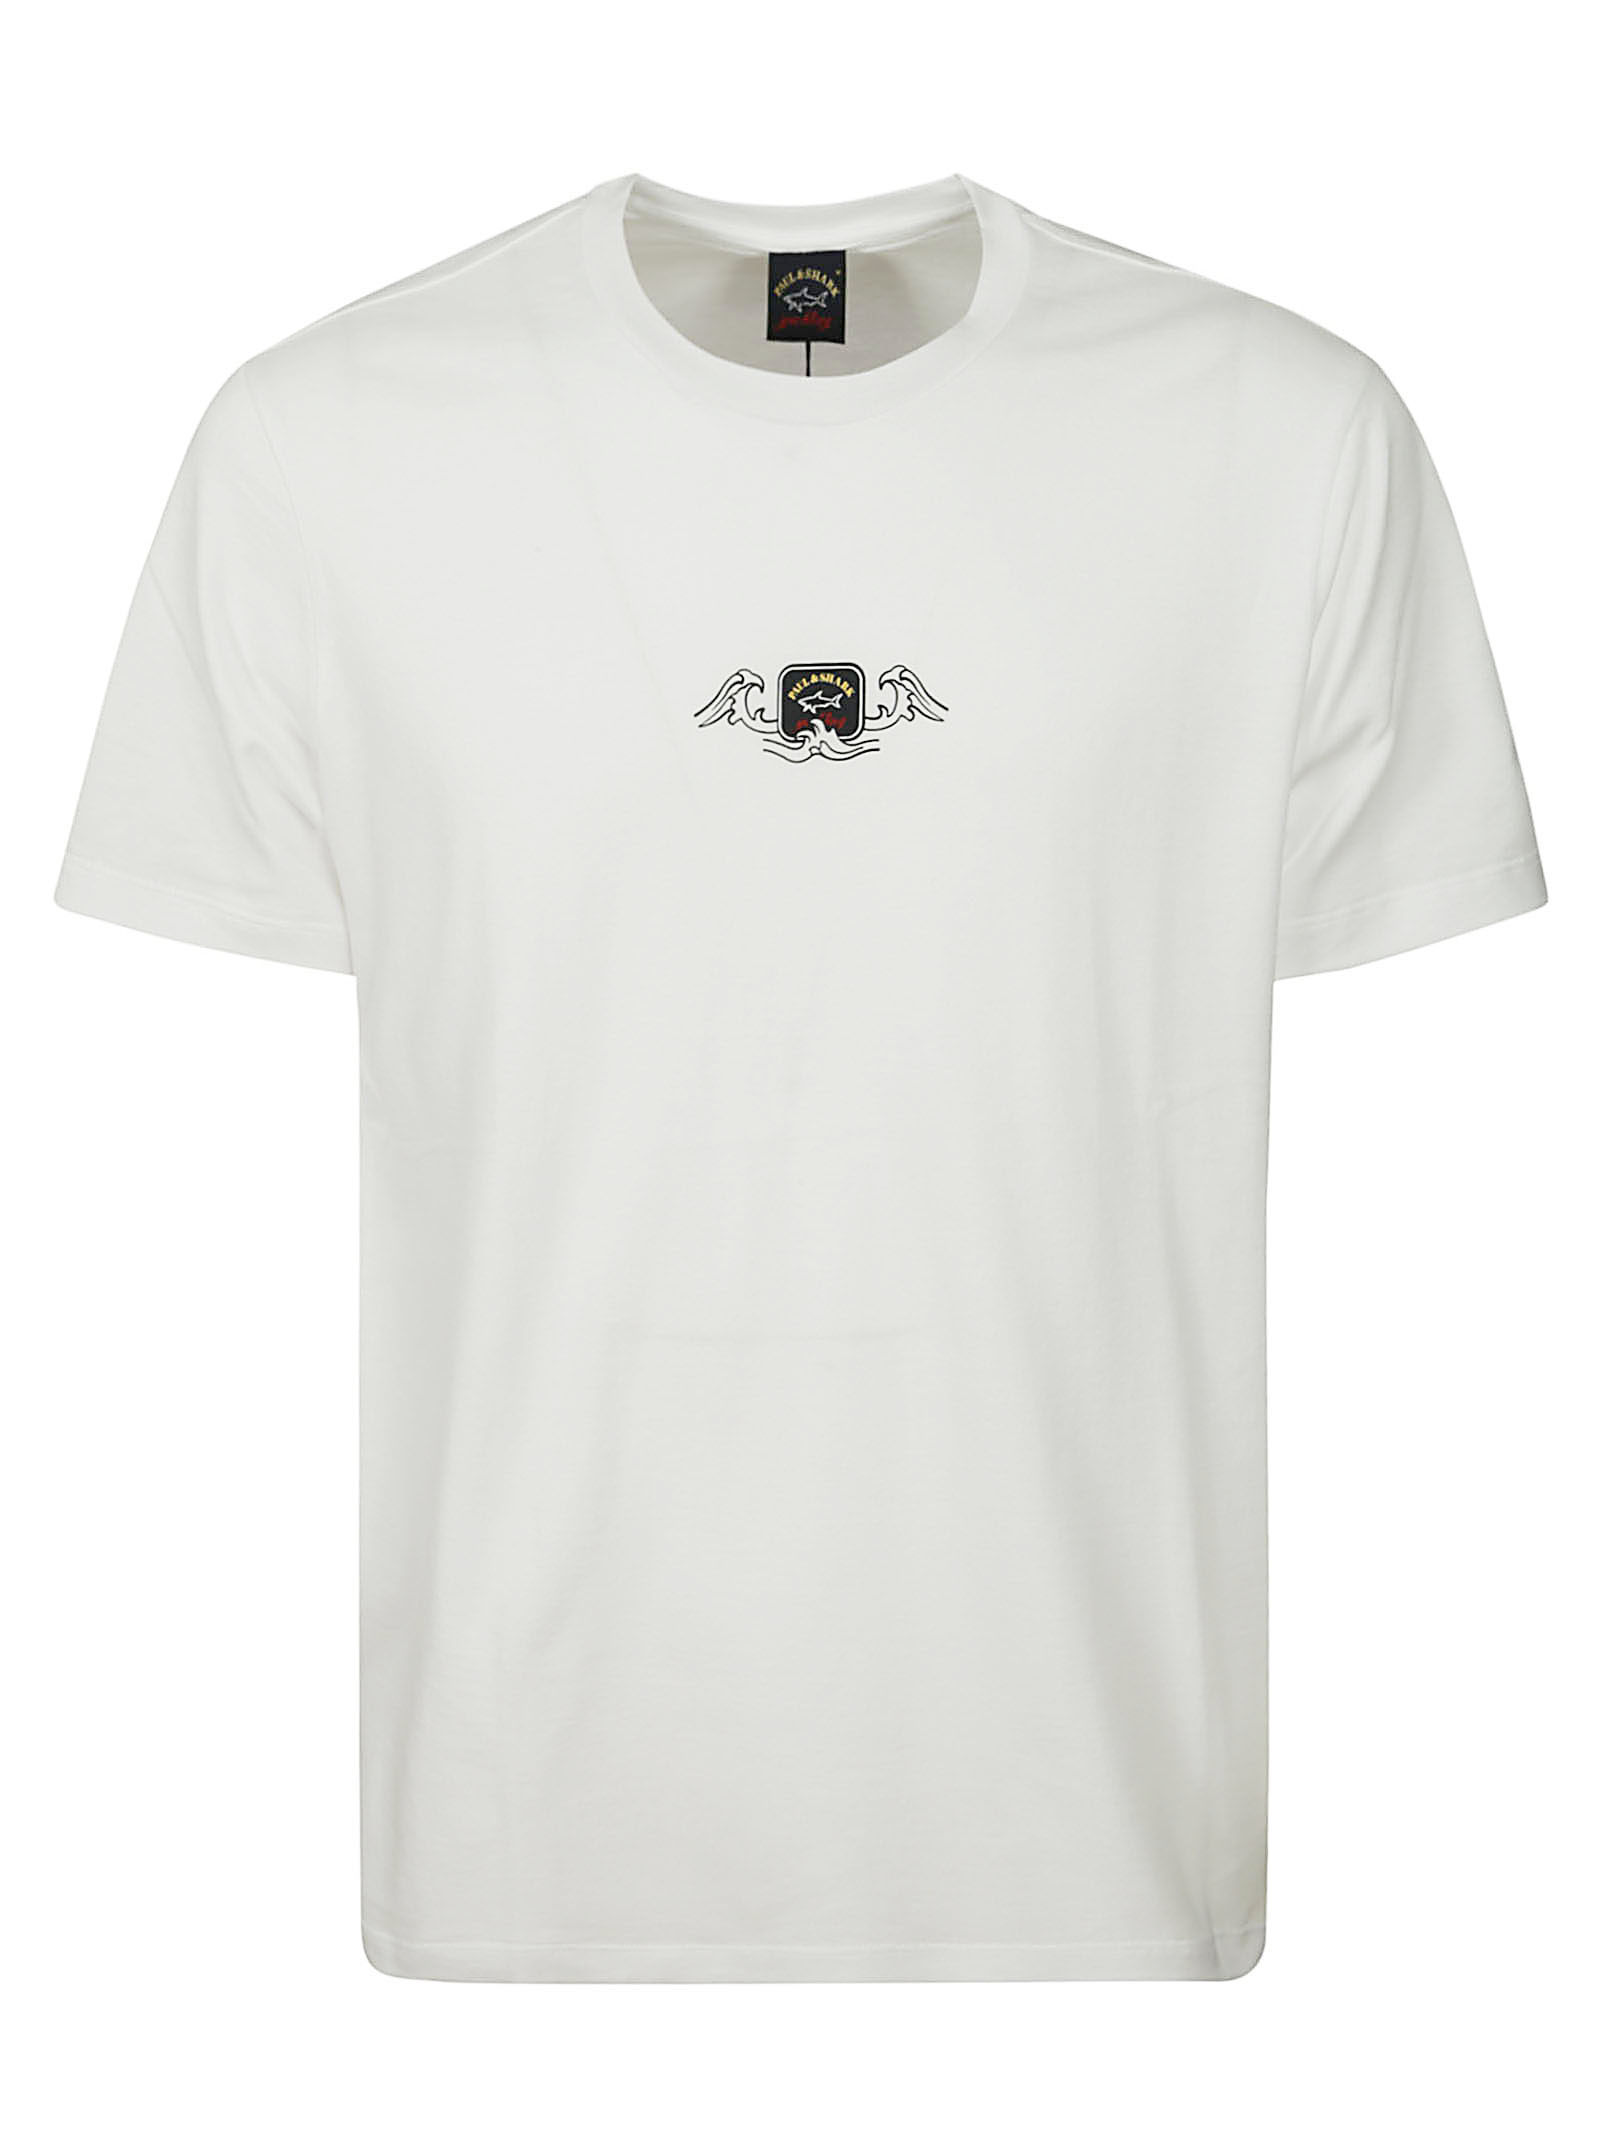 Tshirt maglie e camicie da donna Balenciaga  Acquisti Online su eBay